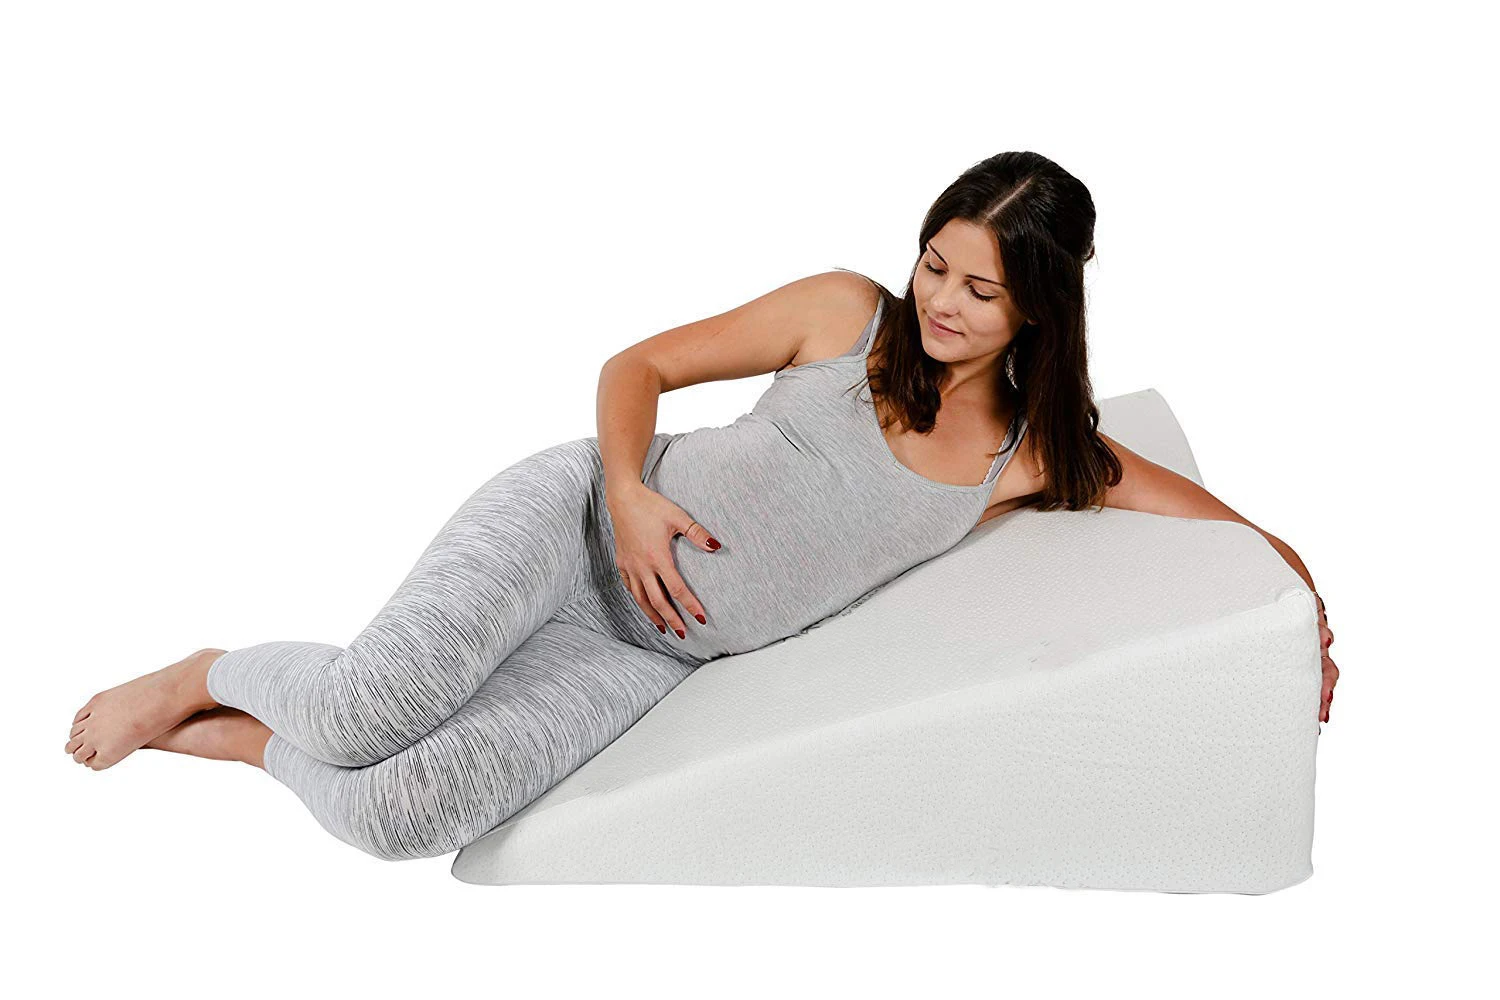 亚马逊畅销孕妇泡沫床楔形枕头背部支撑枕头 可减轻腰痛和睡眠 Buy 泡沫床楔形枕头 后枕 孕妇睡枕product On Alibaba Com